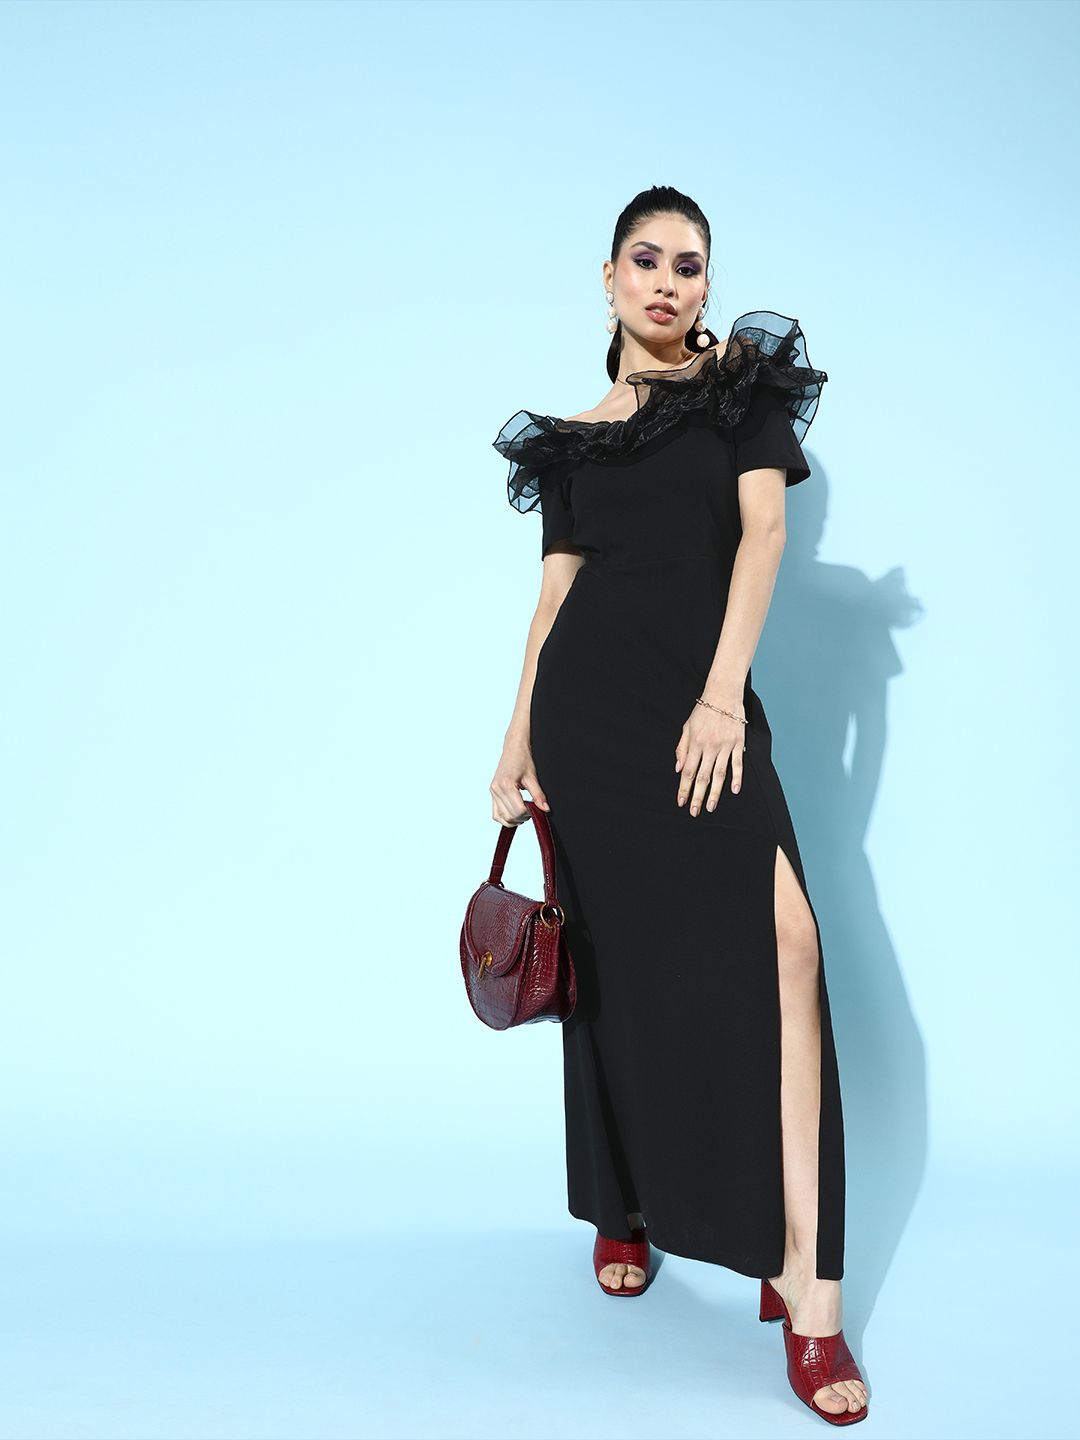 Athena Stylish Black Ruffled Tulle Dress Price in India